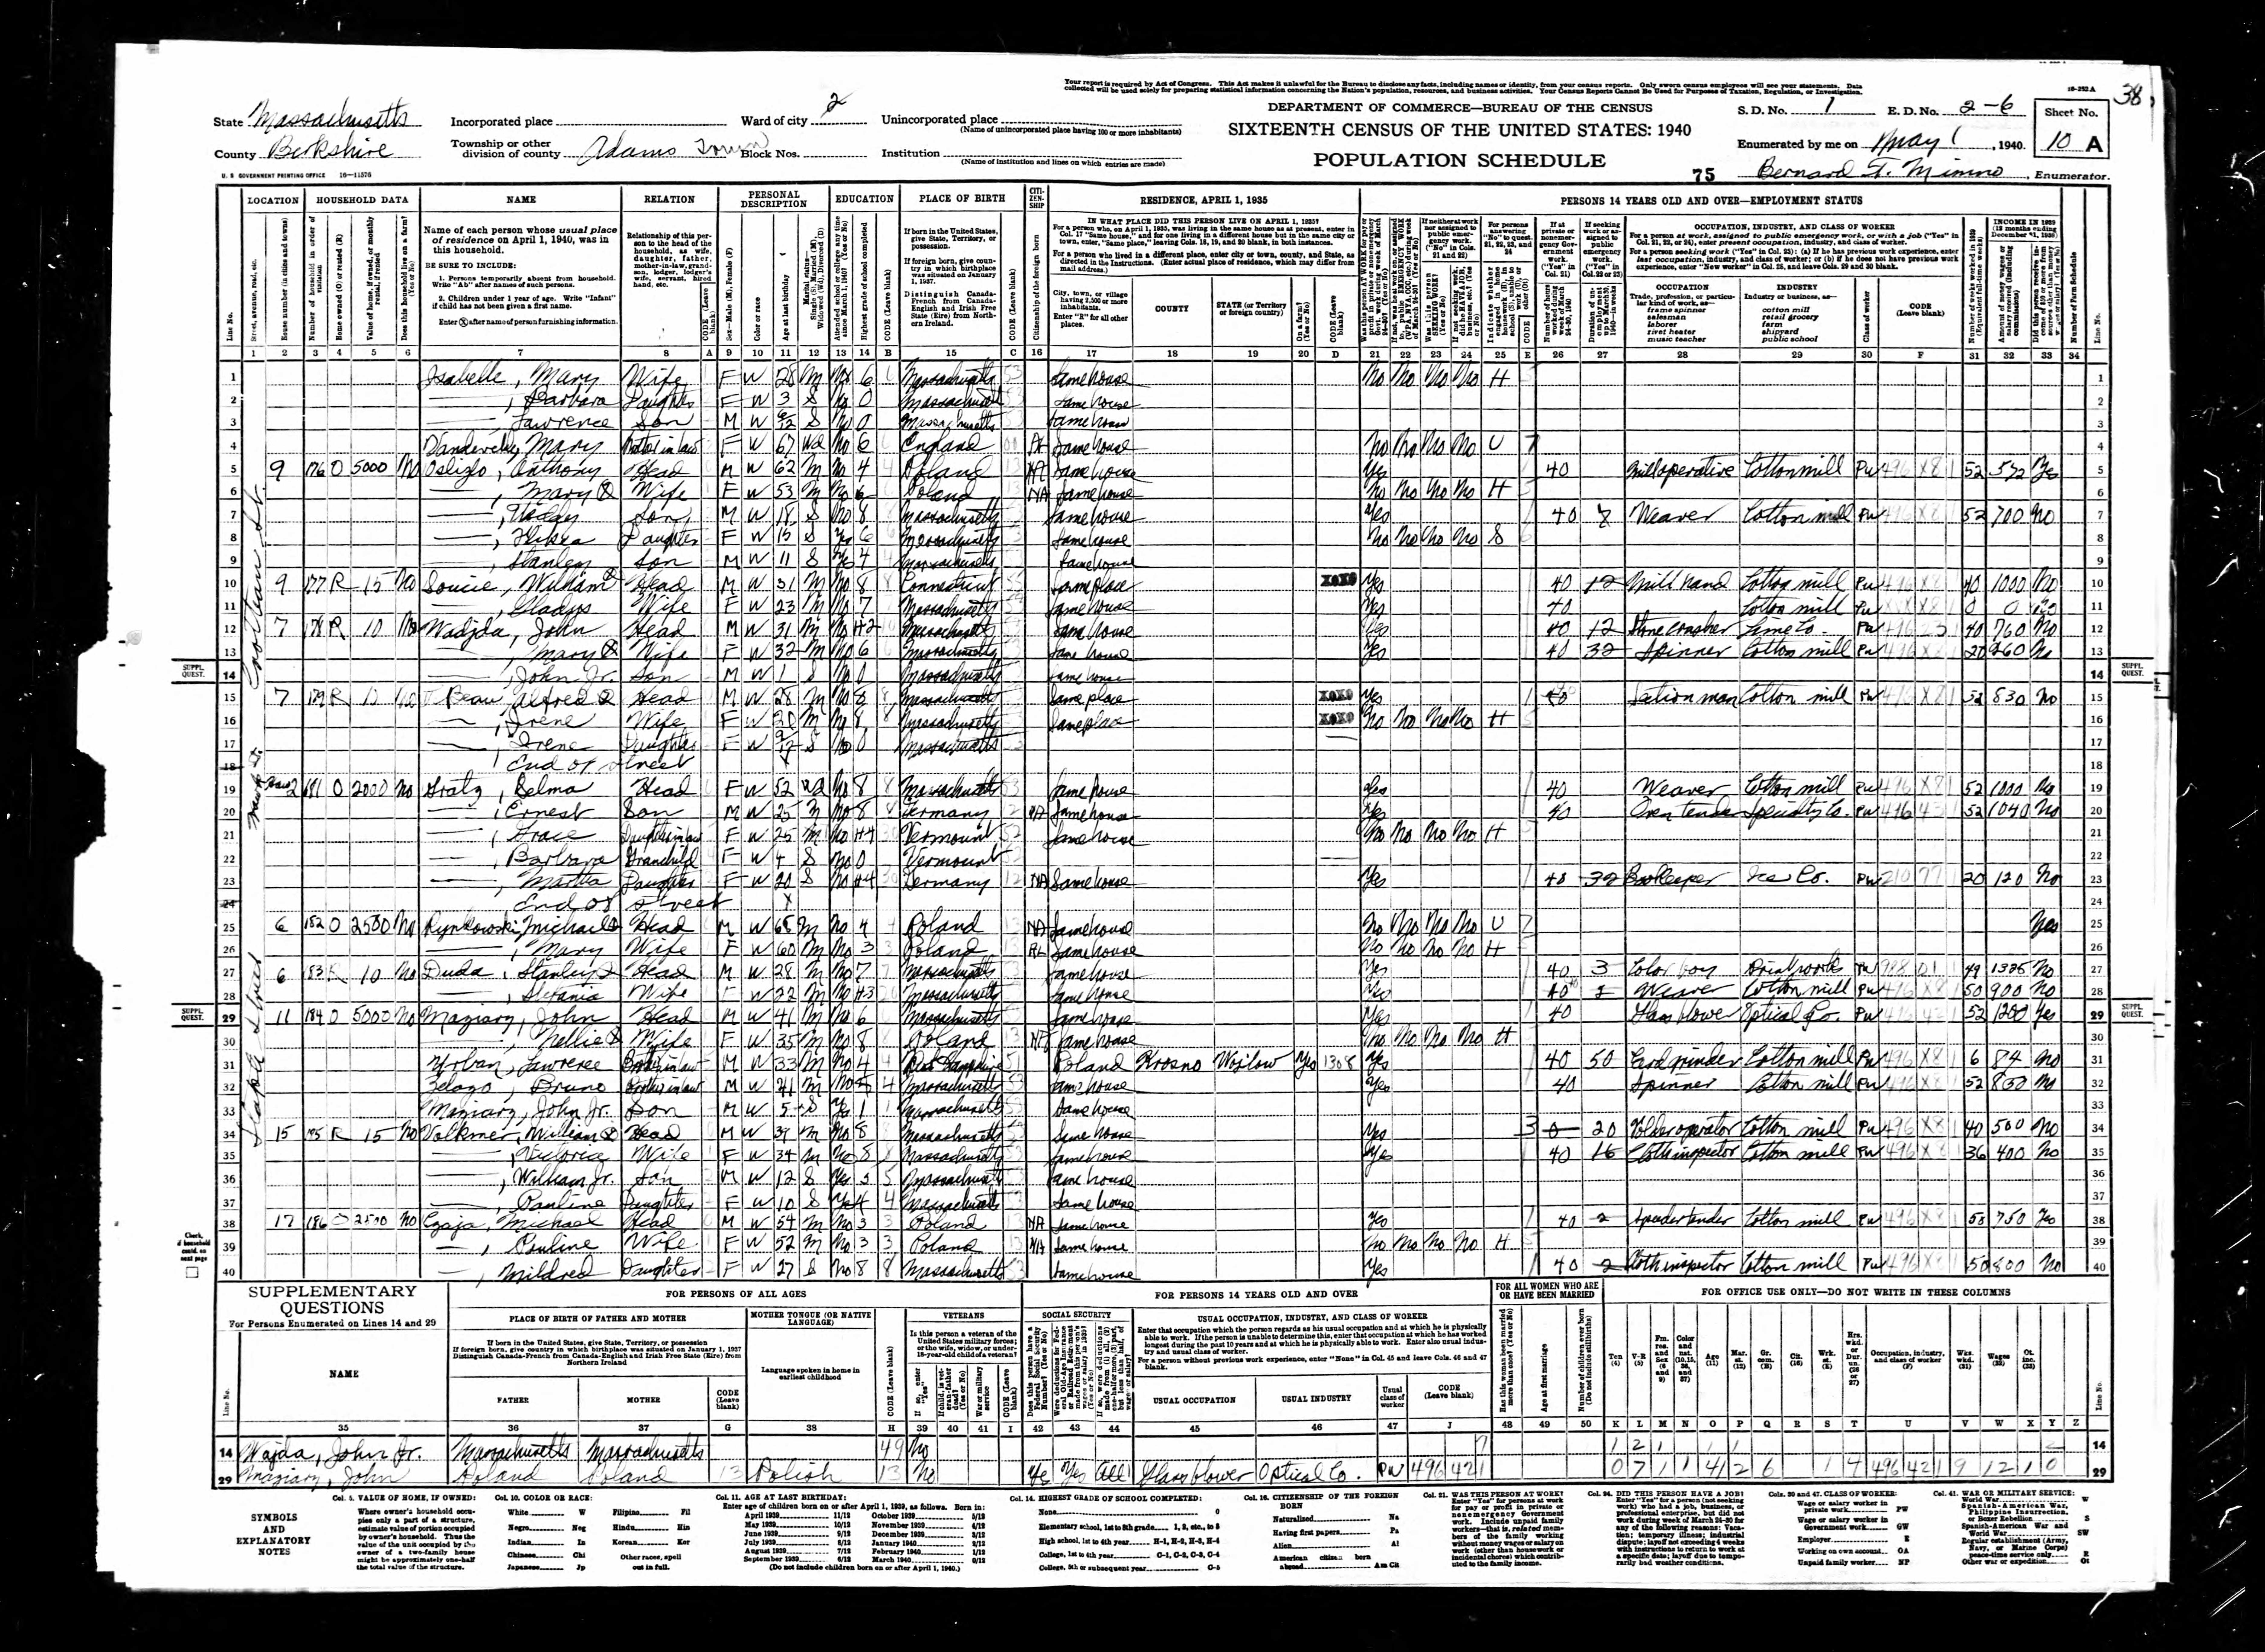 1940 US Census, William H. Soucie, line 10